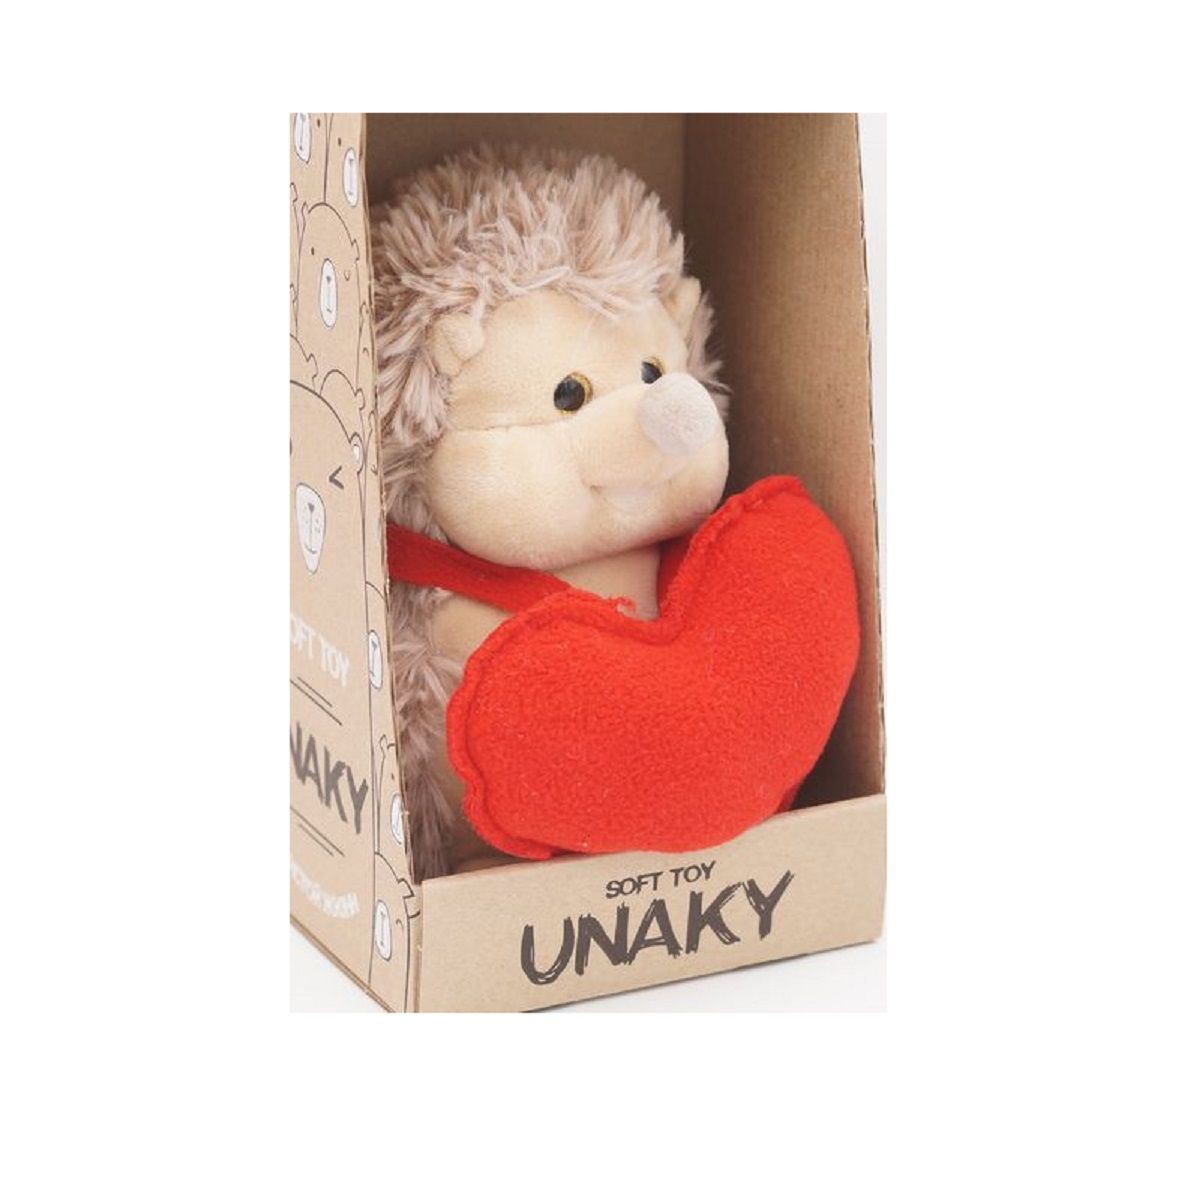 Мягкая игрушка Unaky Soft Toy Ежик Златон с красным сердцем 17 см красный; бежевый мягкая игрушка unaky soft toy ежик златон с красным сердцем 17 см